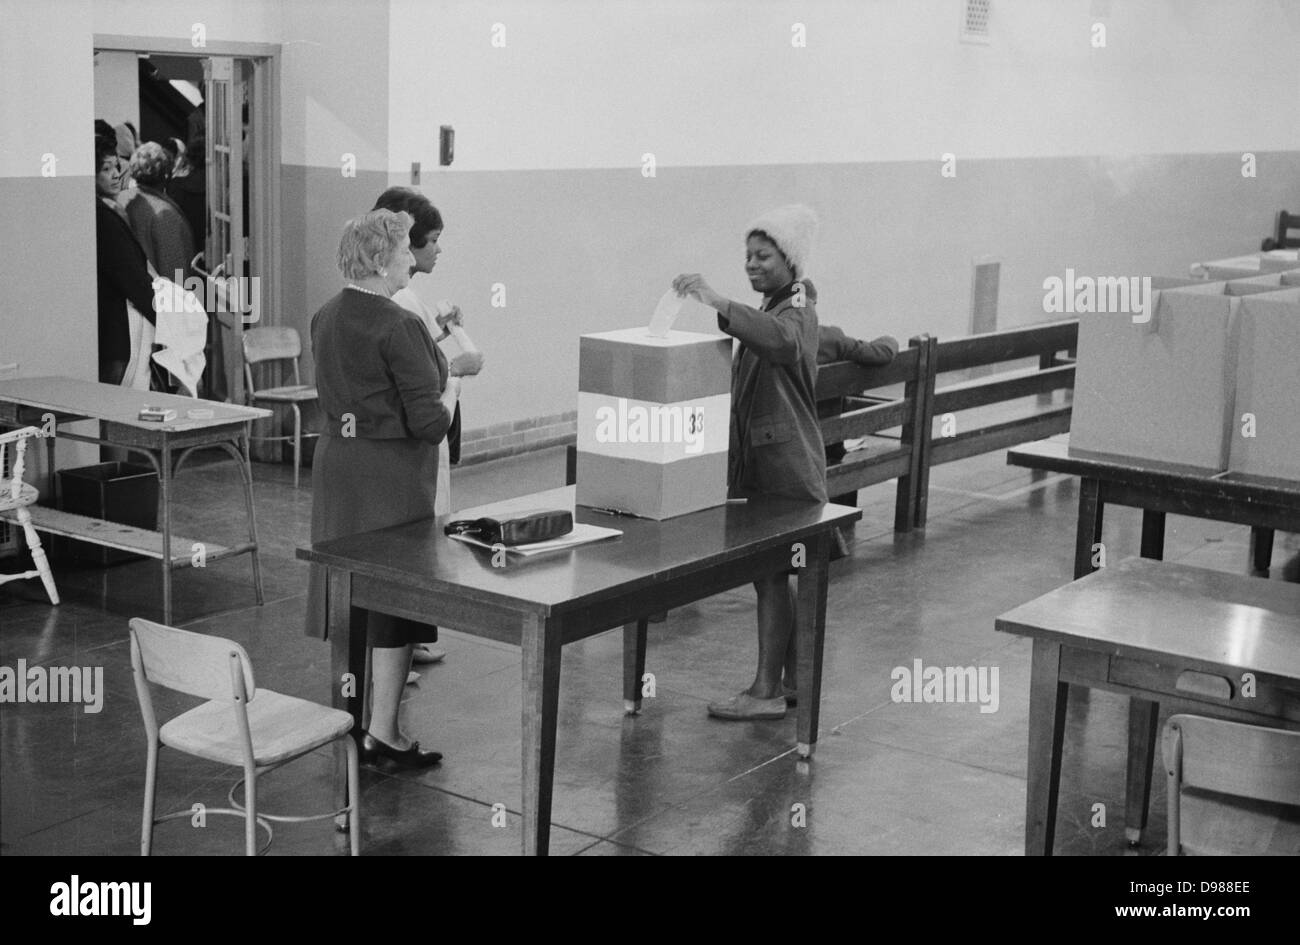 Young African American Woman casting son vote dans l'urne au bureau de scrutin dans l'Cardoza High School Building, Washington. DC, 3 mai 1964. Photographe : Marion S Trikosko. Banque D'Images